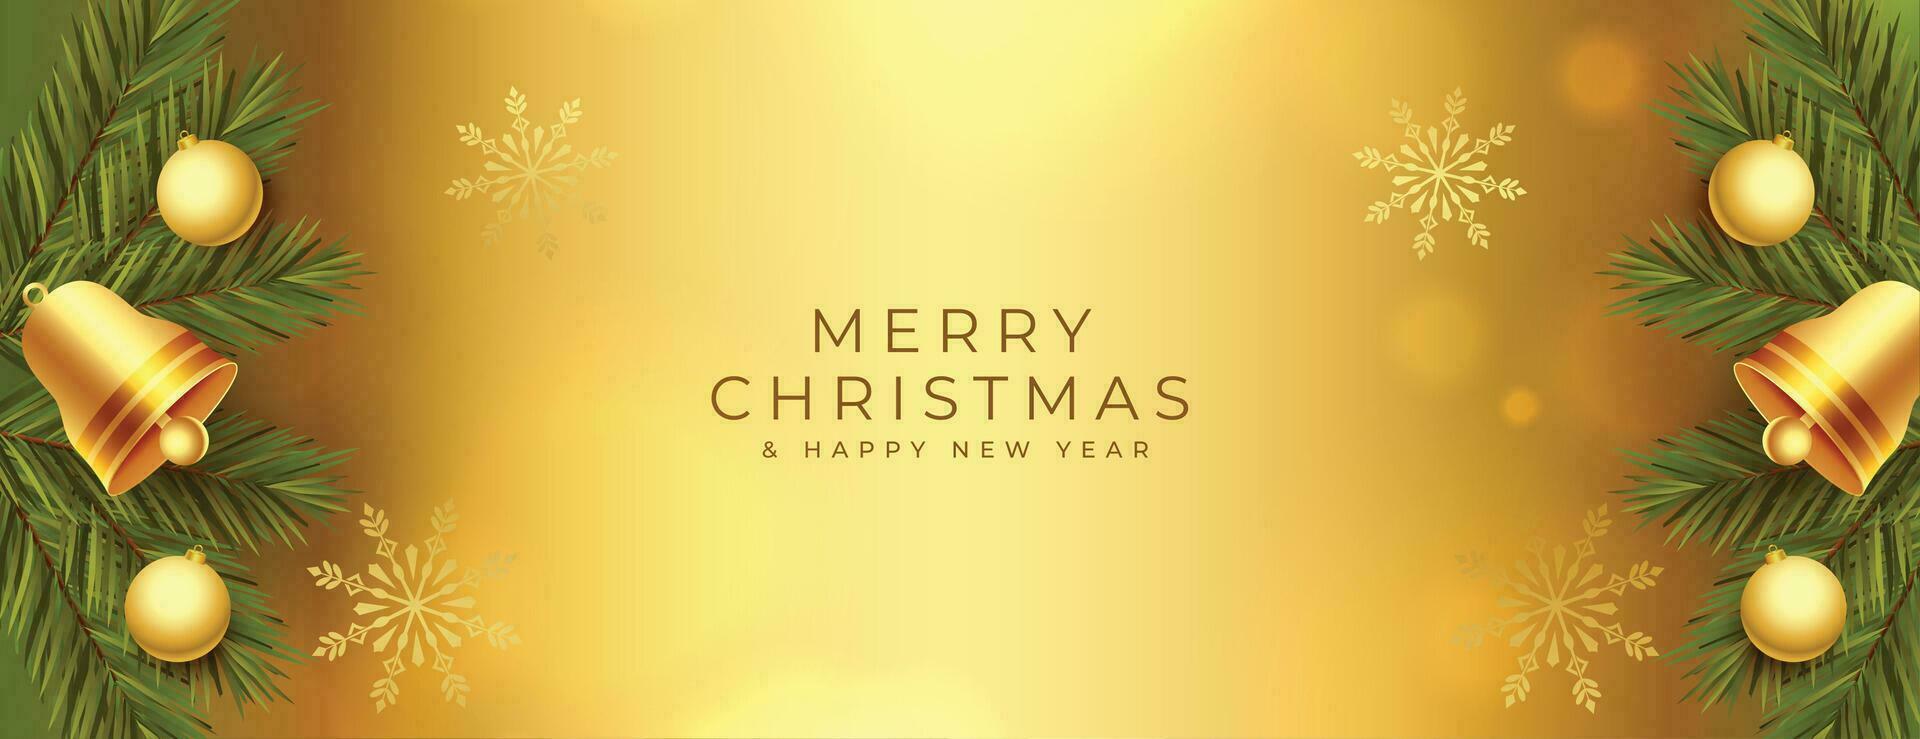 elegante alegre Navidad dorado bandera con decorativo elementos vector